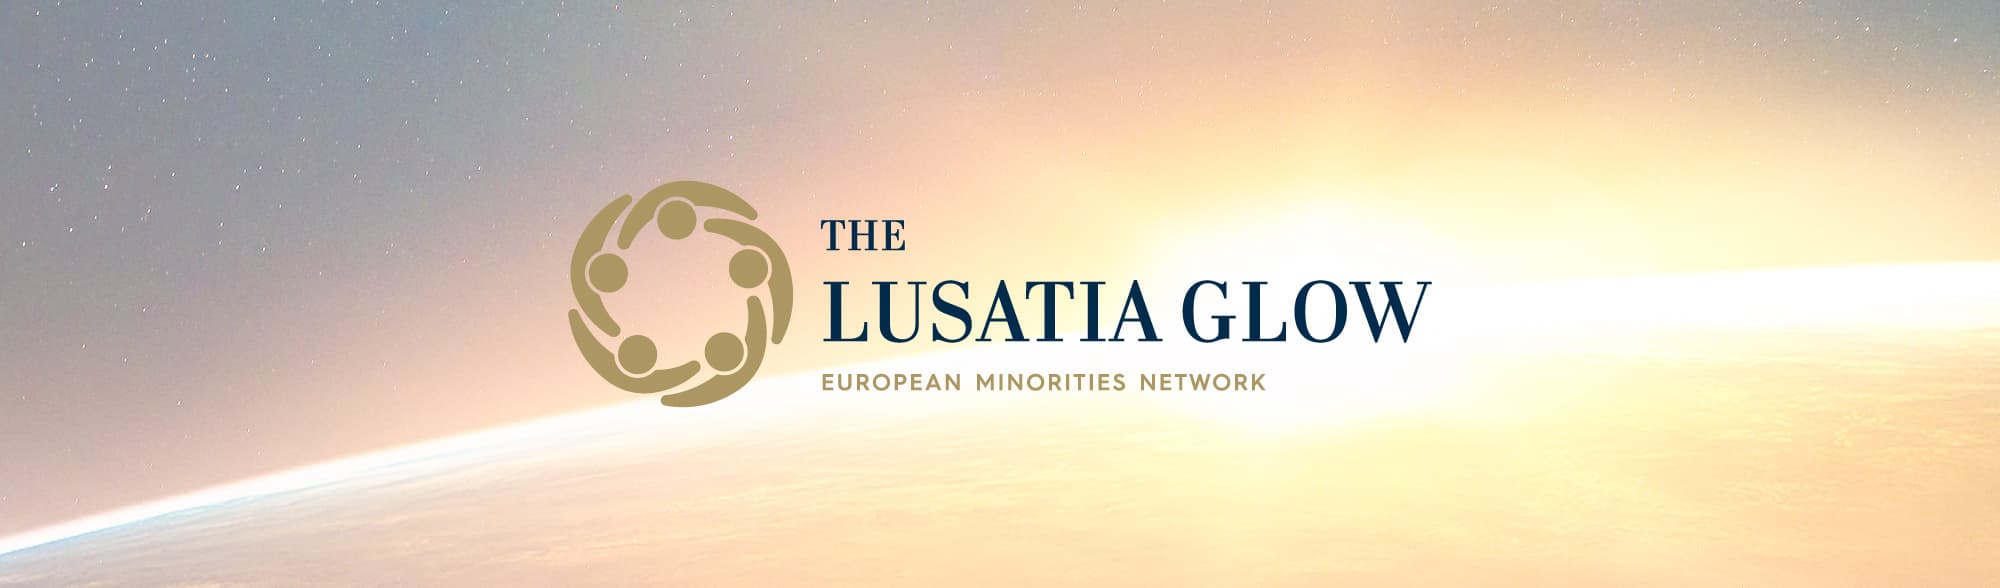 Lusatia Glow_Referenz_Header